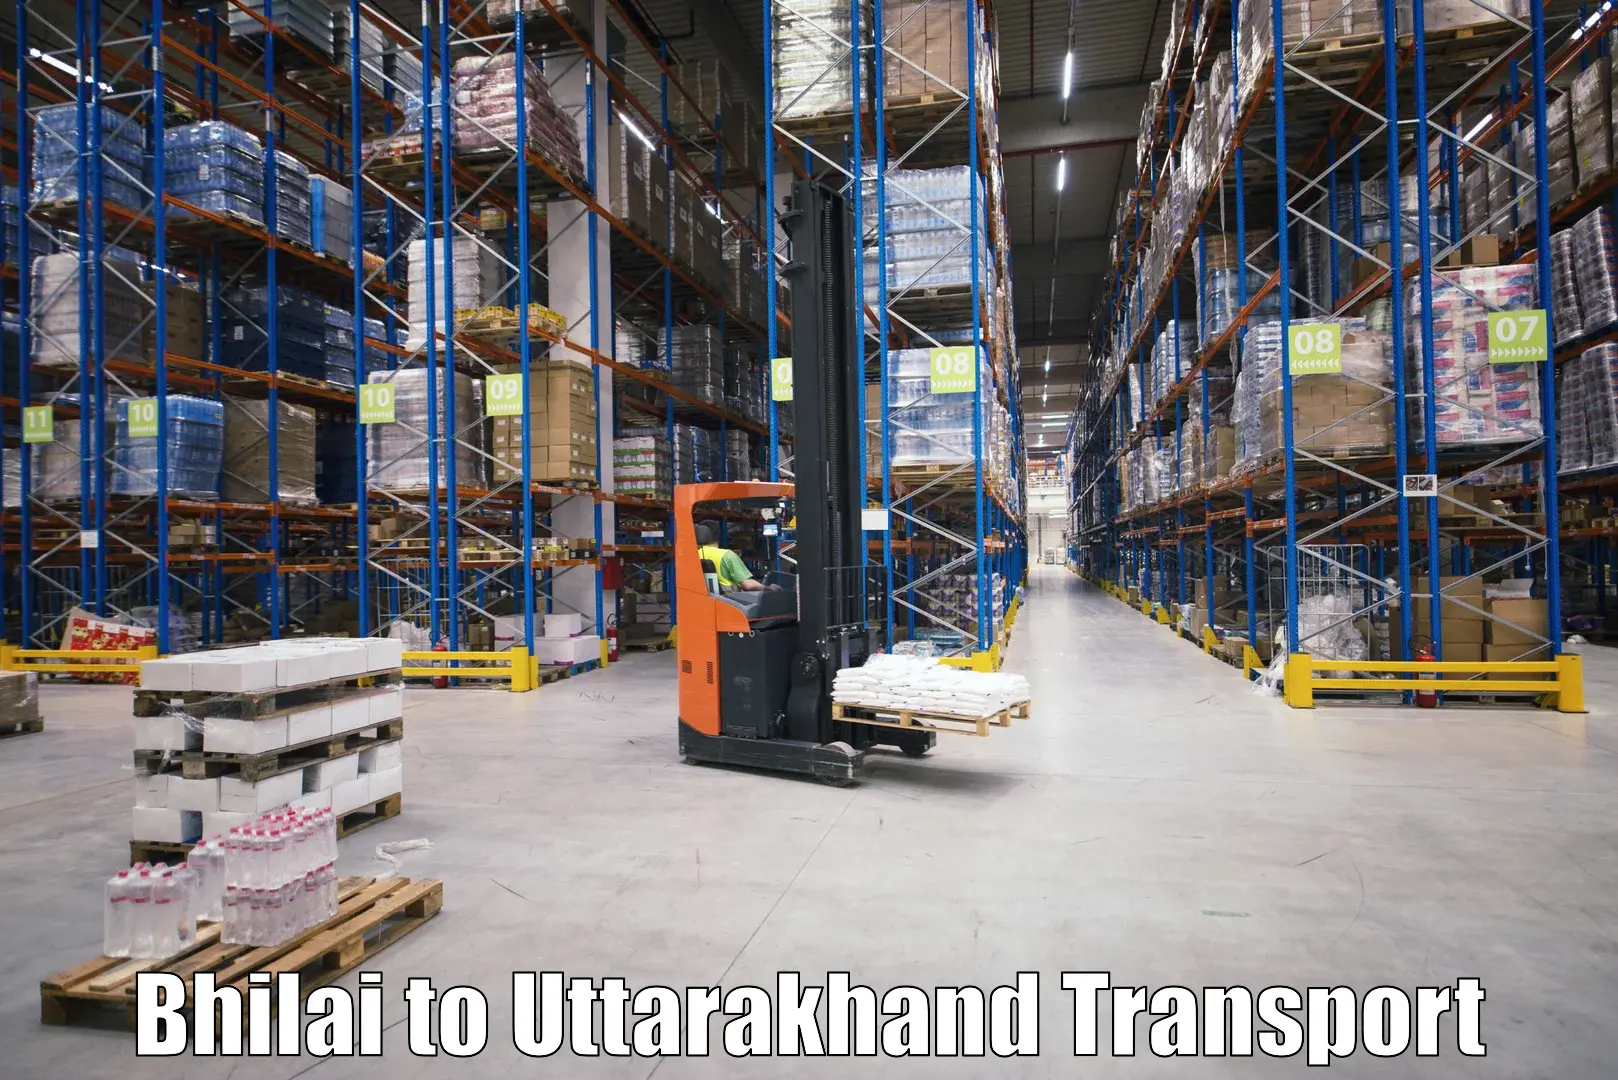 Furniture transport service Bhilai to Someshwar